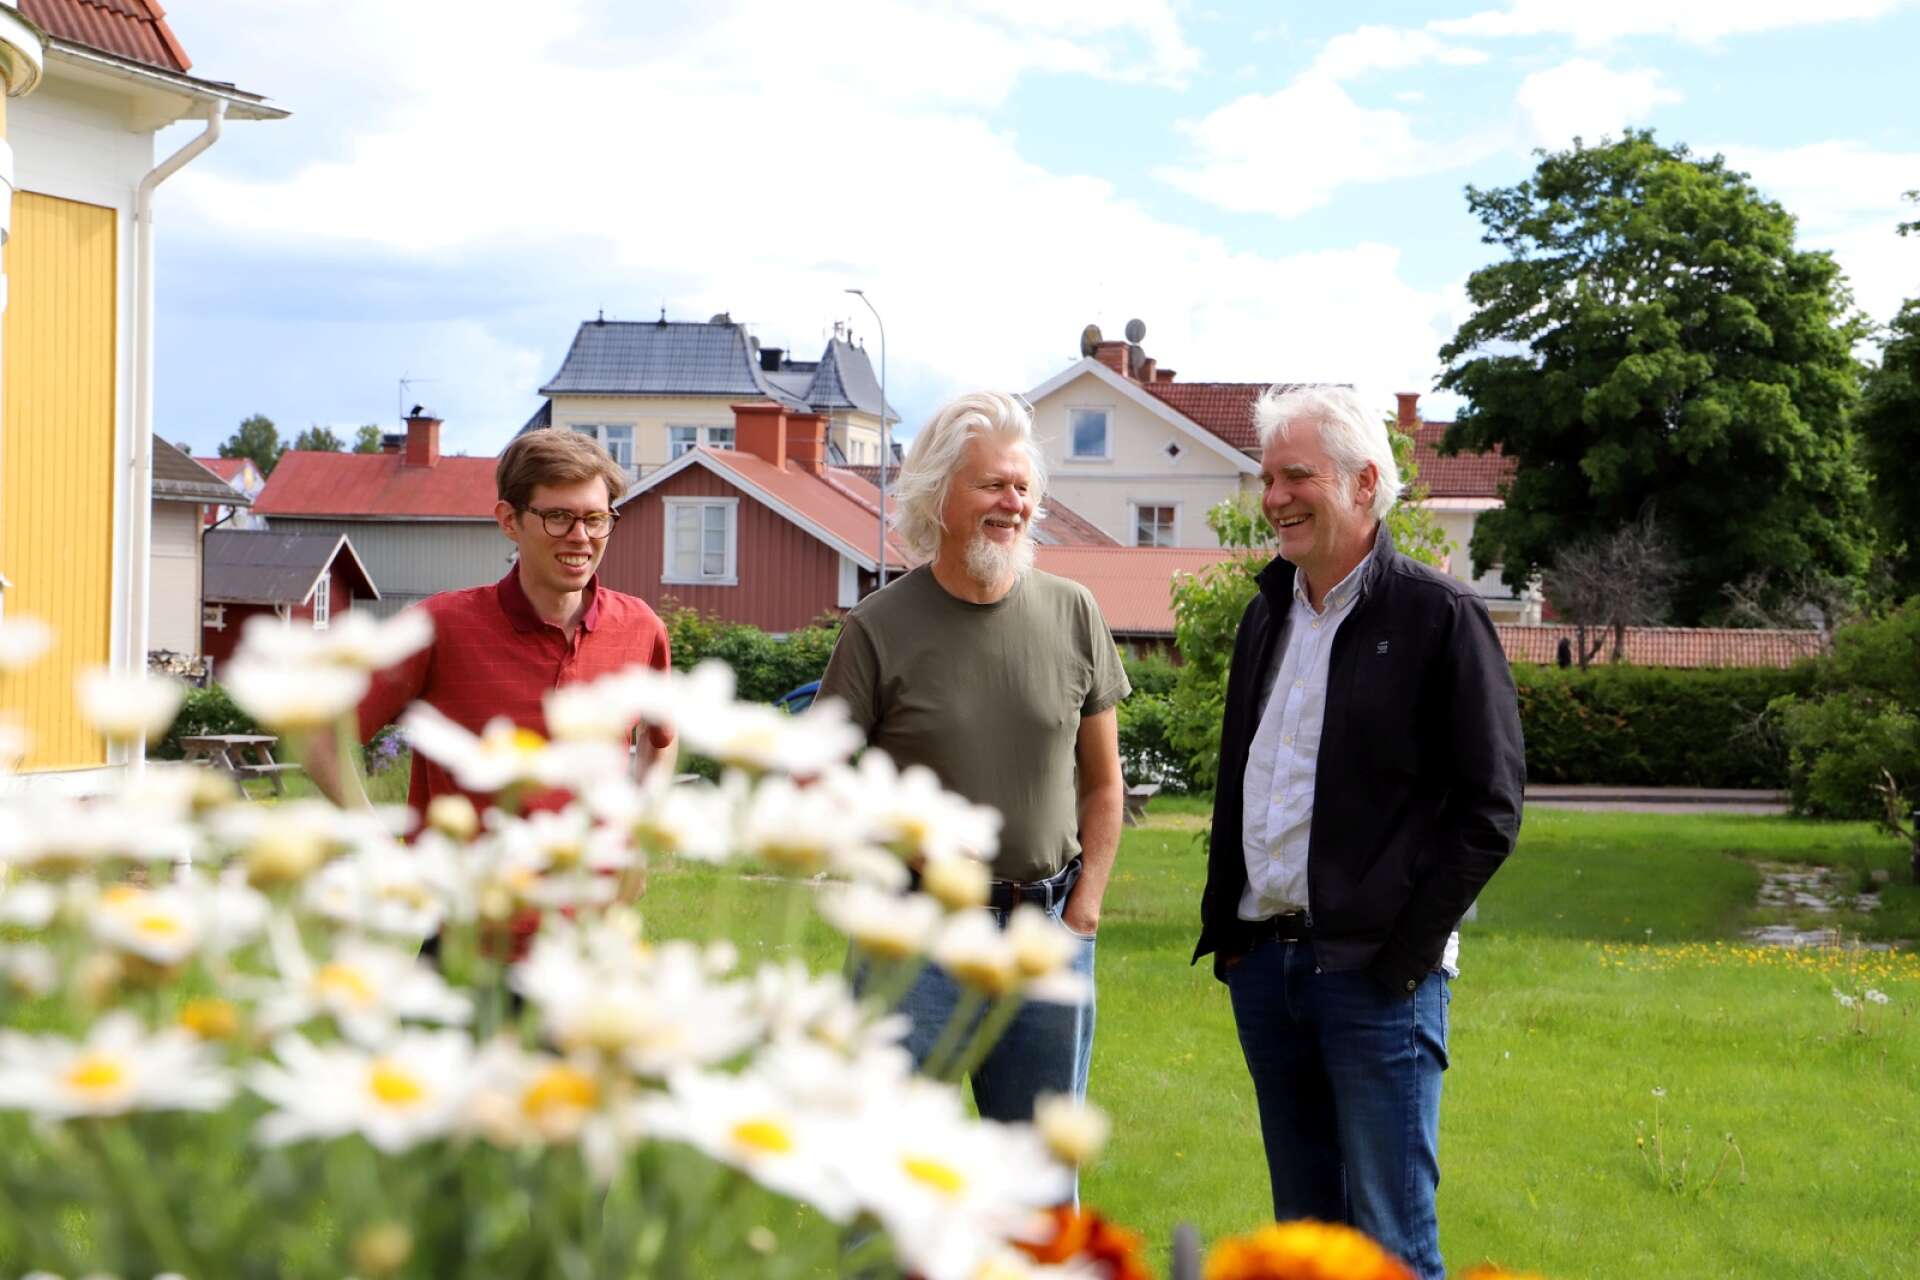 NWT träffade Tobias Andersson, Lars Andersson och Martin Bagge i Sunne, strax innan de första gången skulle träffa kyrkokören för en första genomgång av verket och planerna.